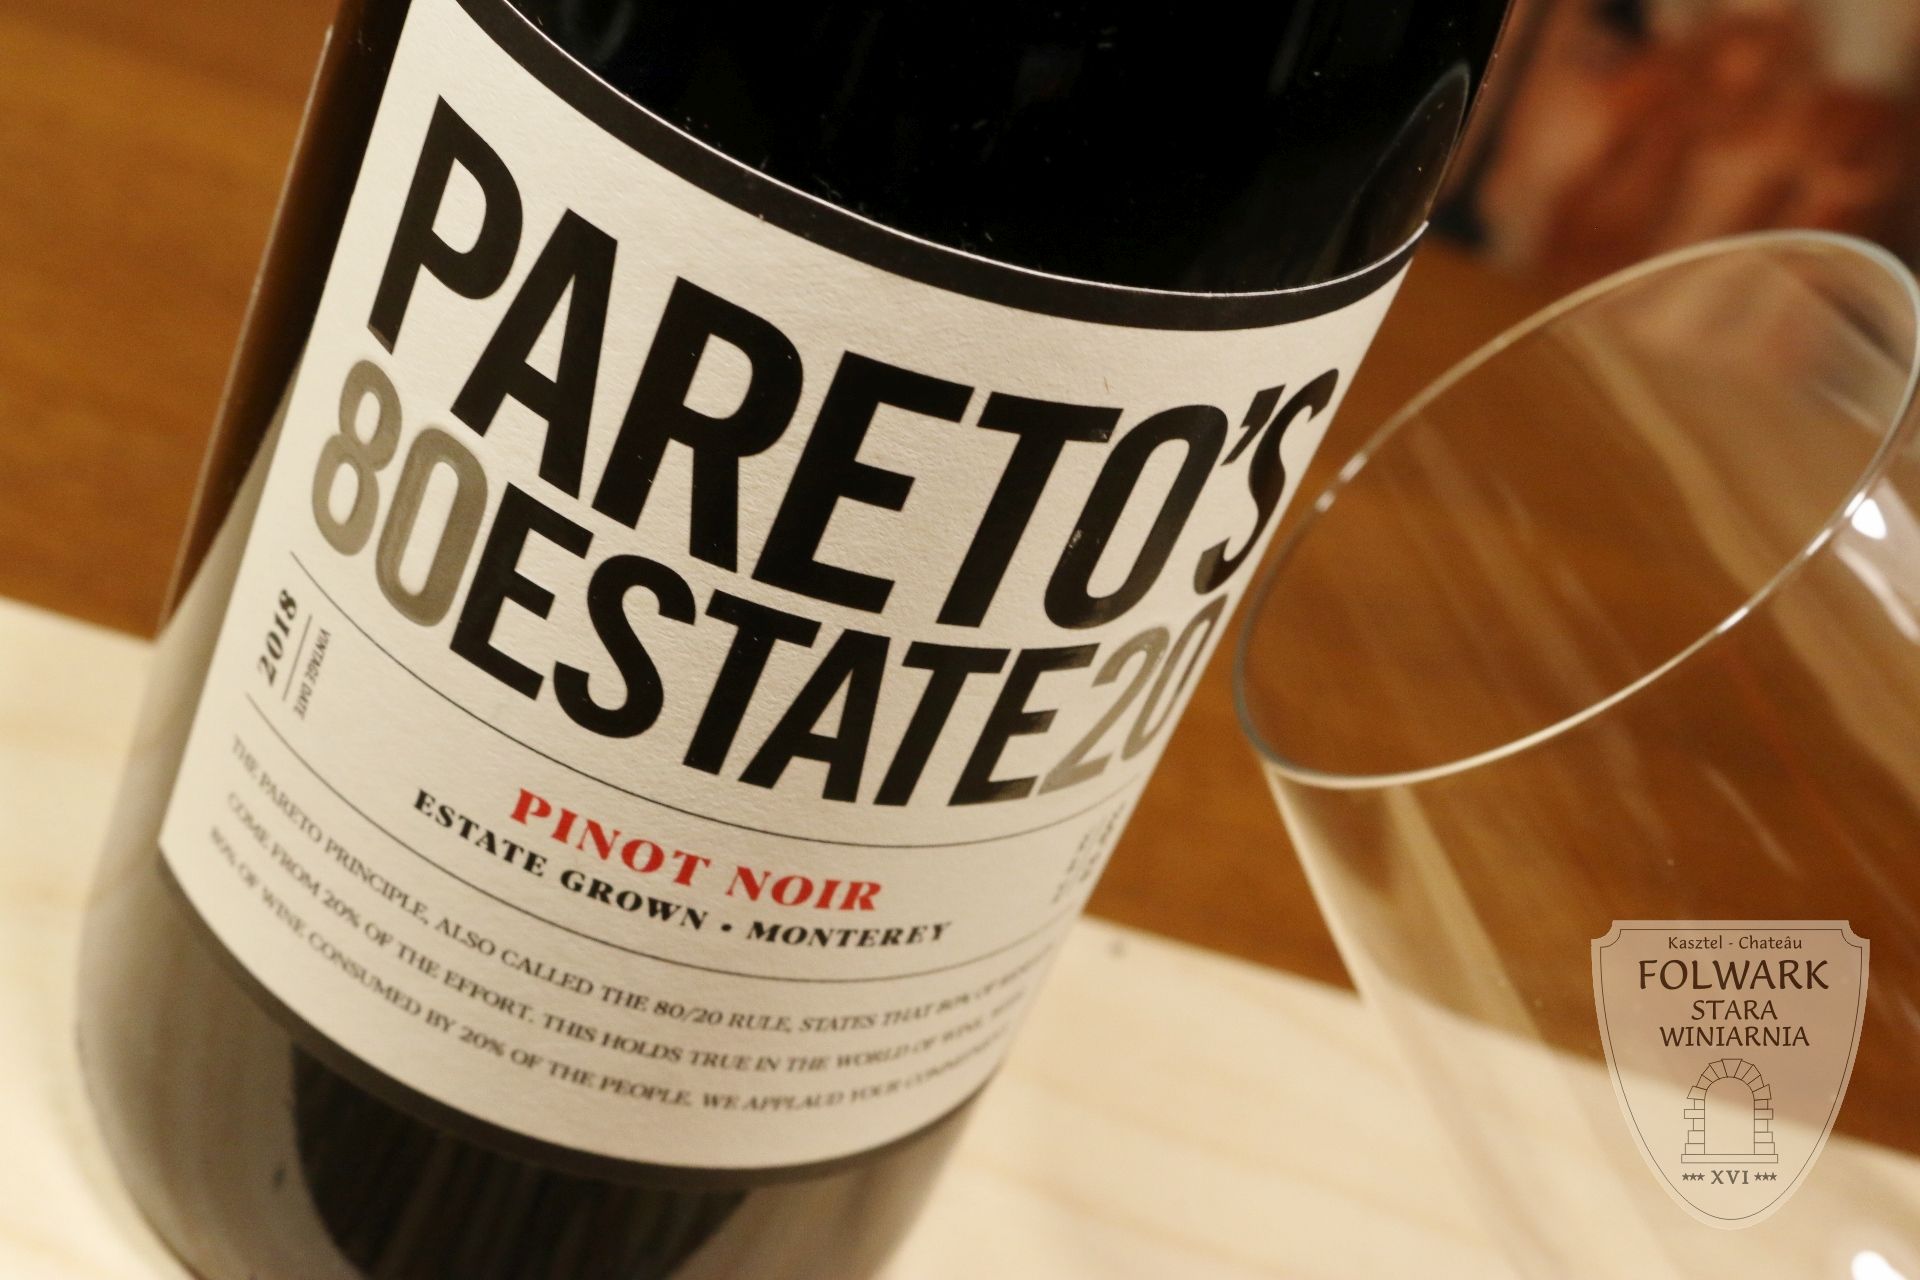 Pareto's Pinot Noir Folwark Stara Winiarnia Mszana Dolna 